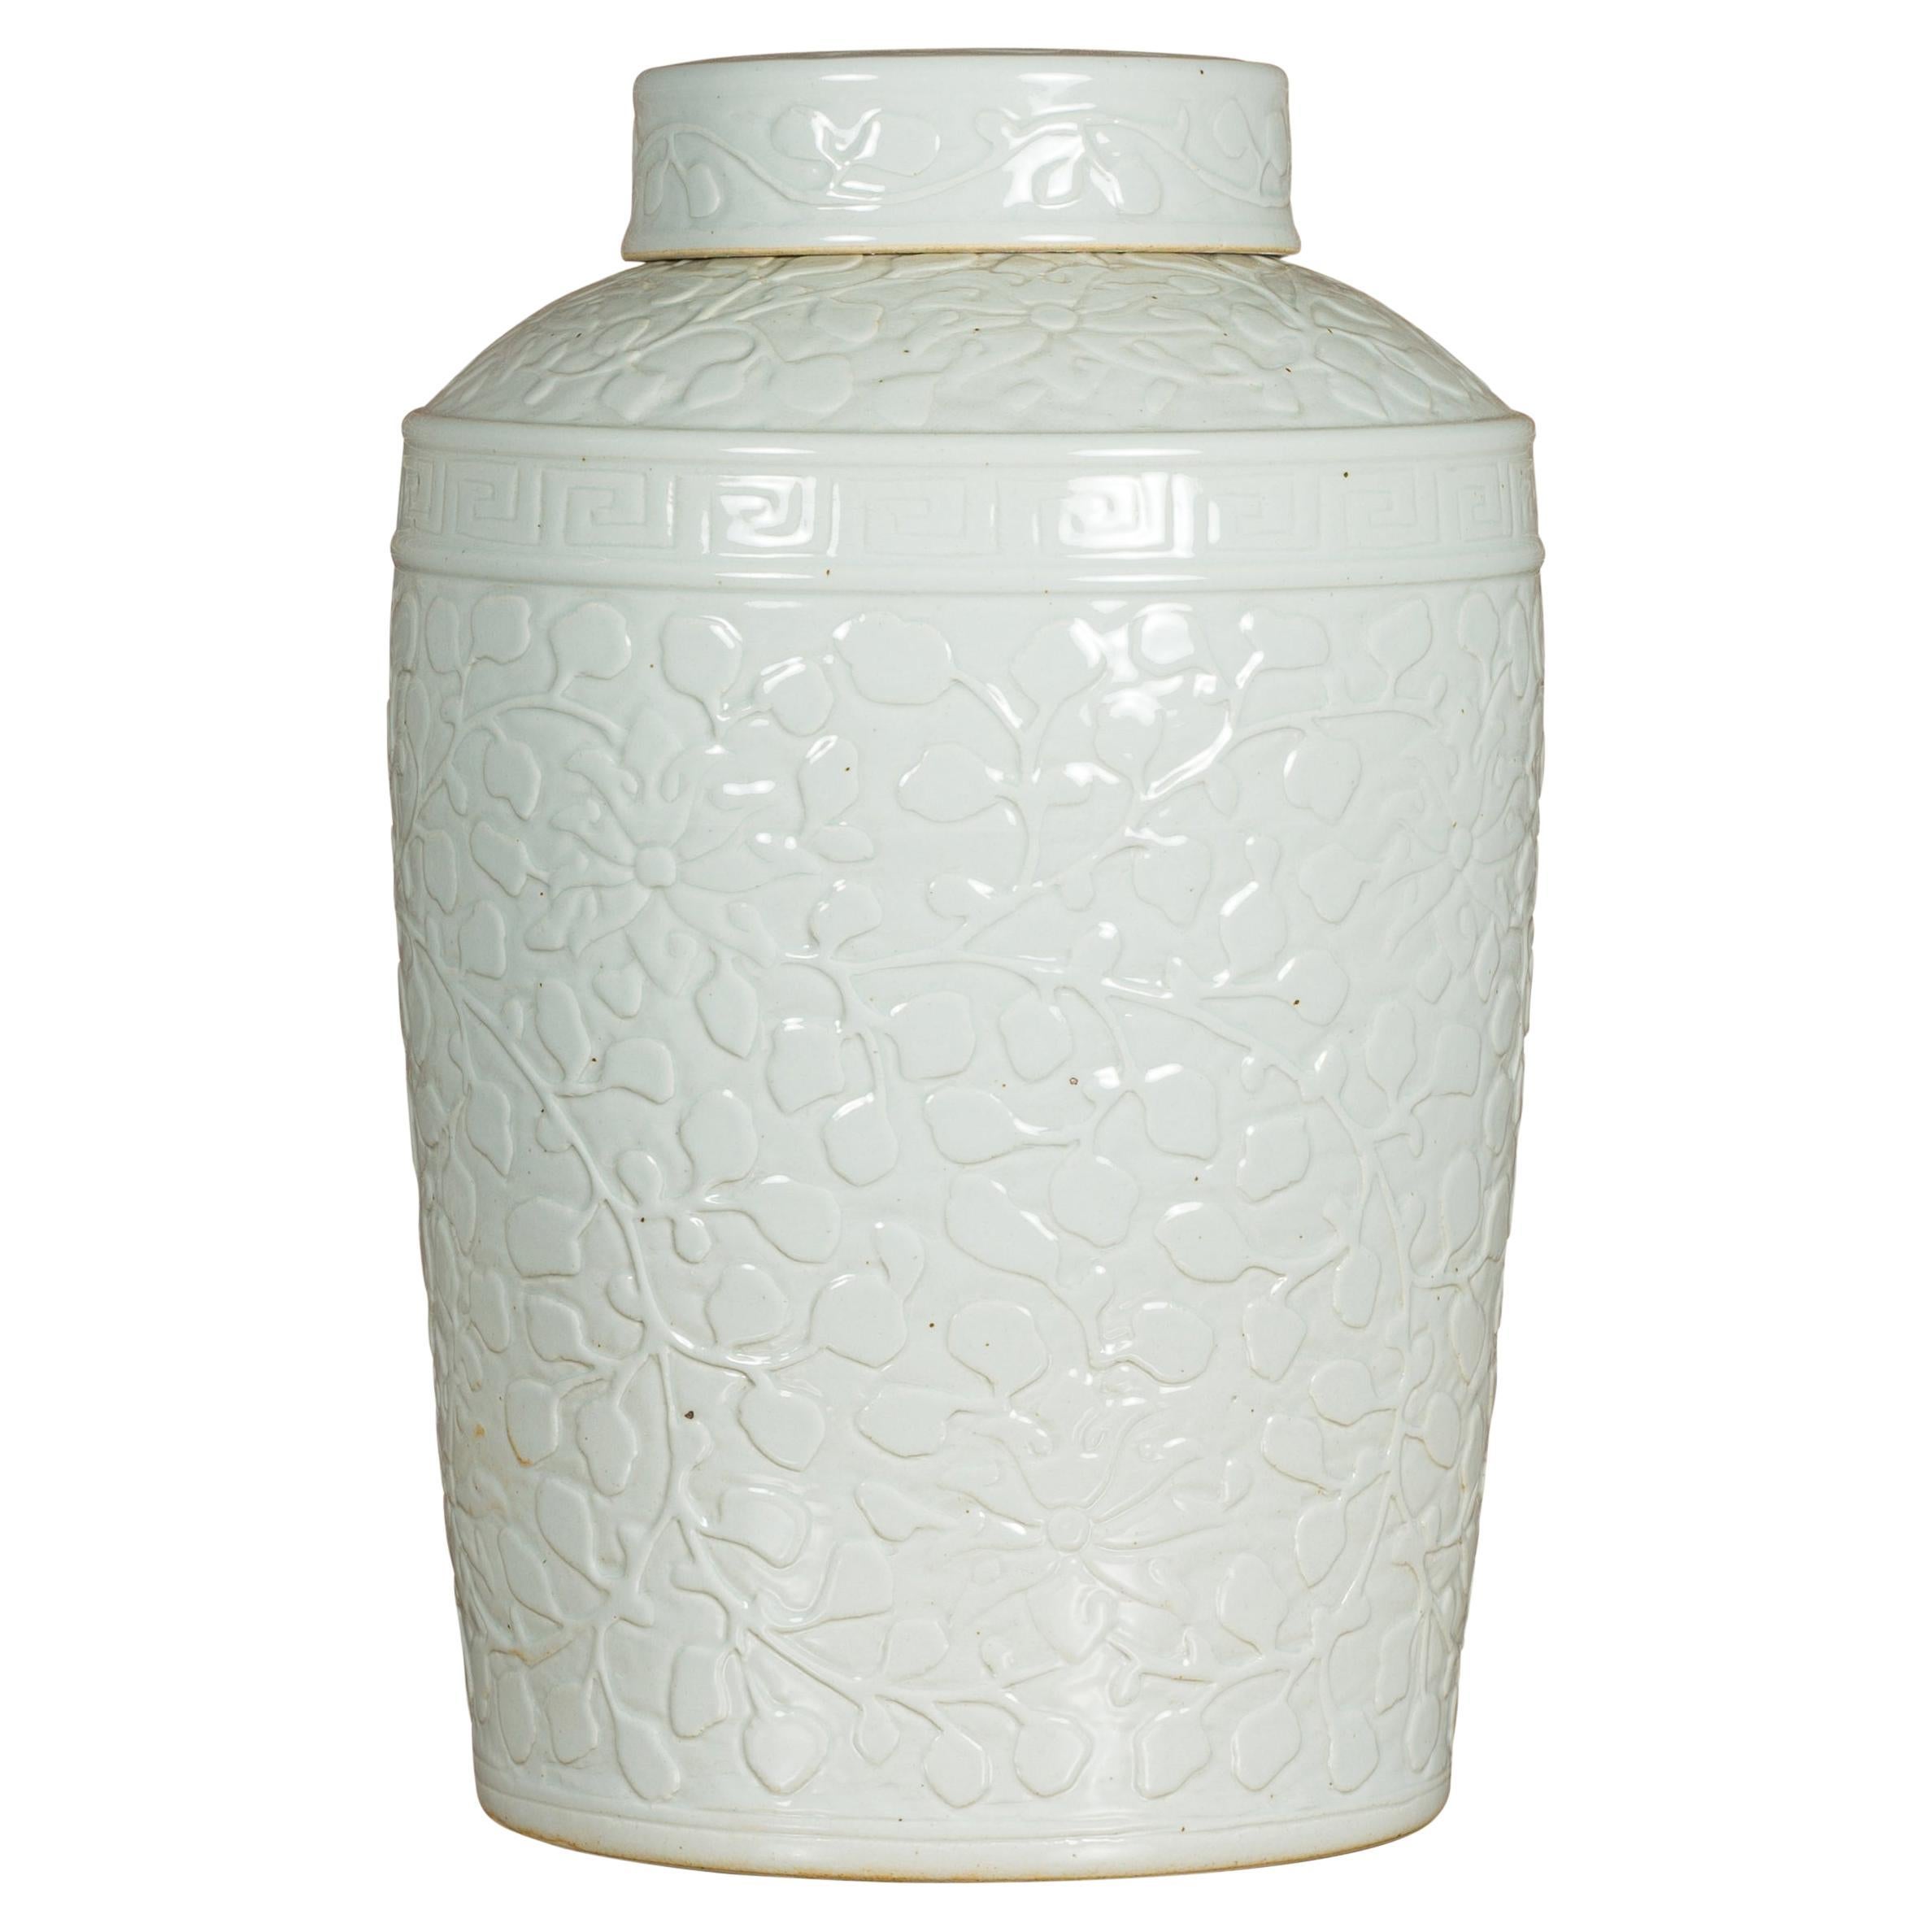 Pot à couvercle asiatique en porcelaine blanche avec motifs de feuillage en volutes